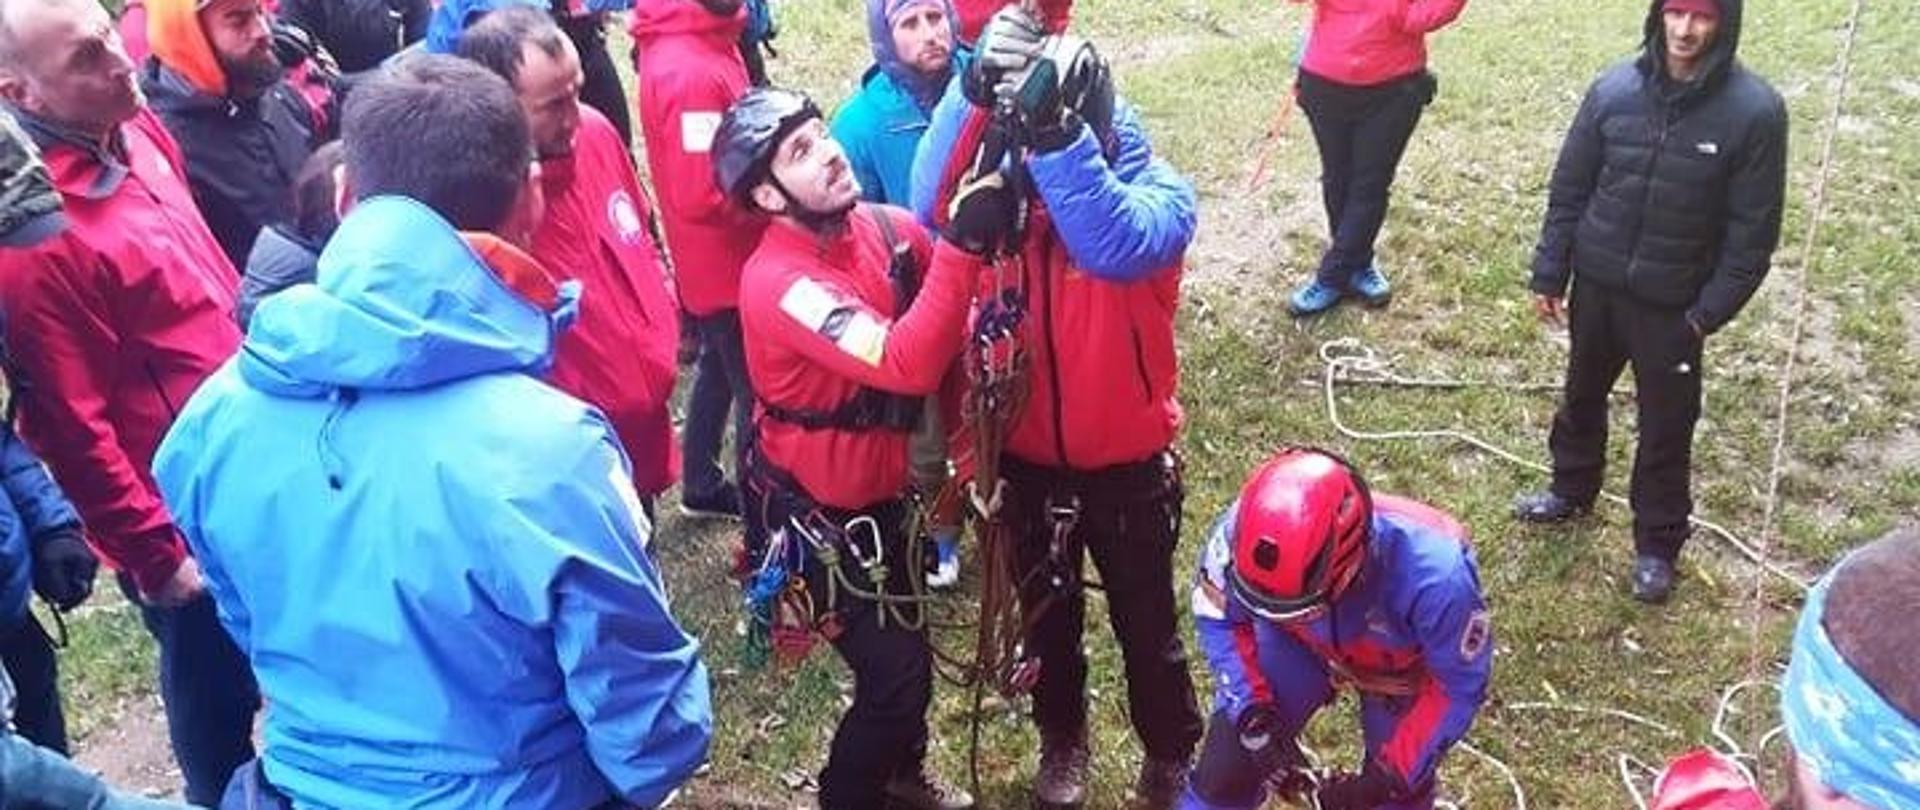 Grupa osób ubranych w czerwone i niebieskie kurtki trzyma linę.. jedna osoba leży na noszach udając osobę poszkodowaną w celu przeprowadzenia szkolenia ratowników górskich